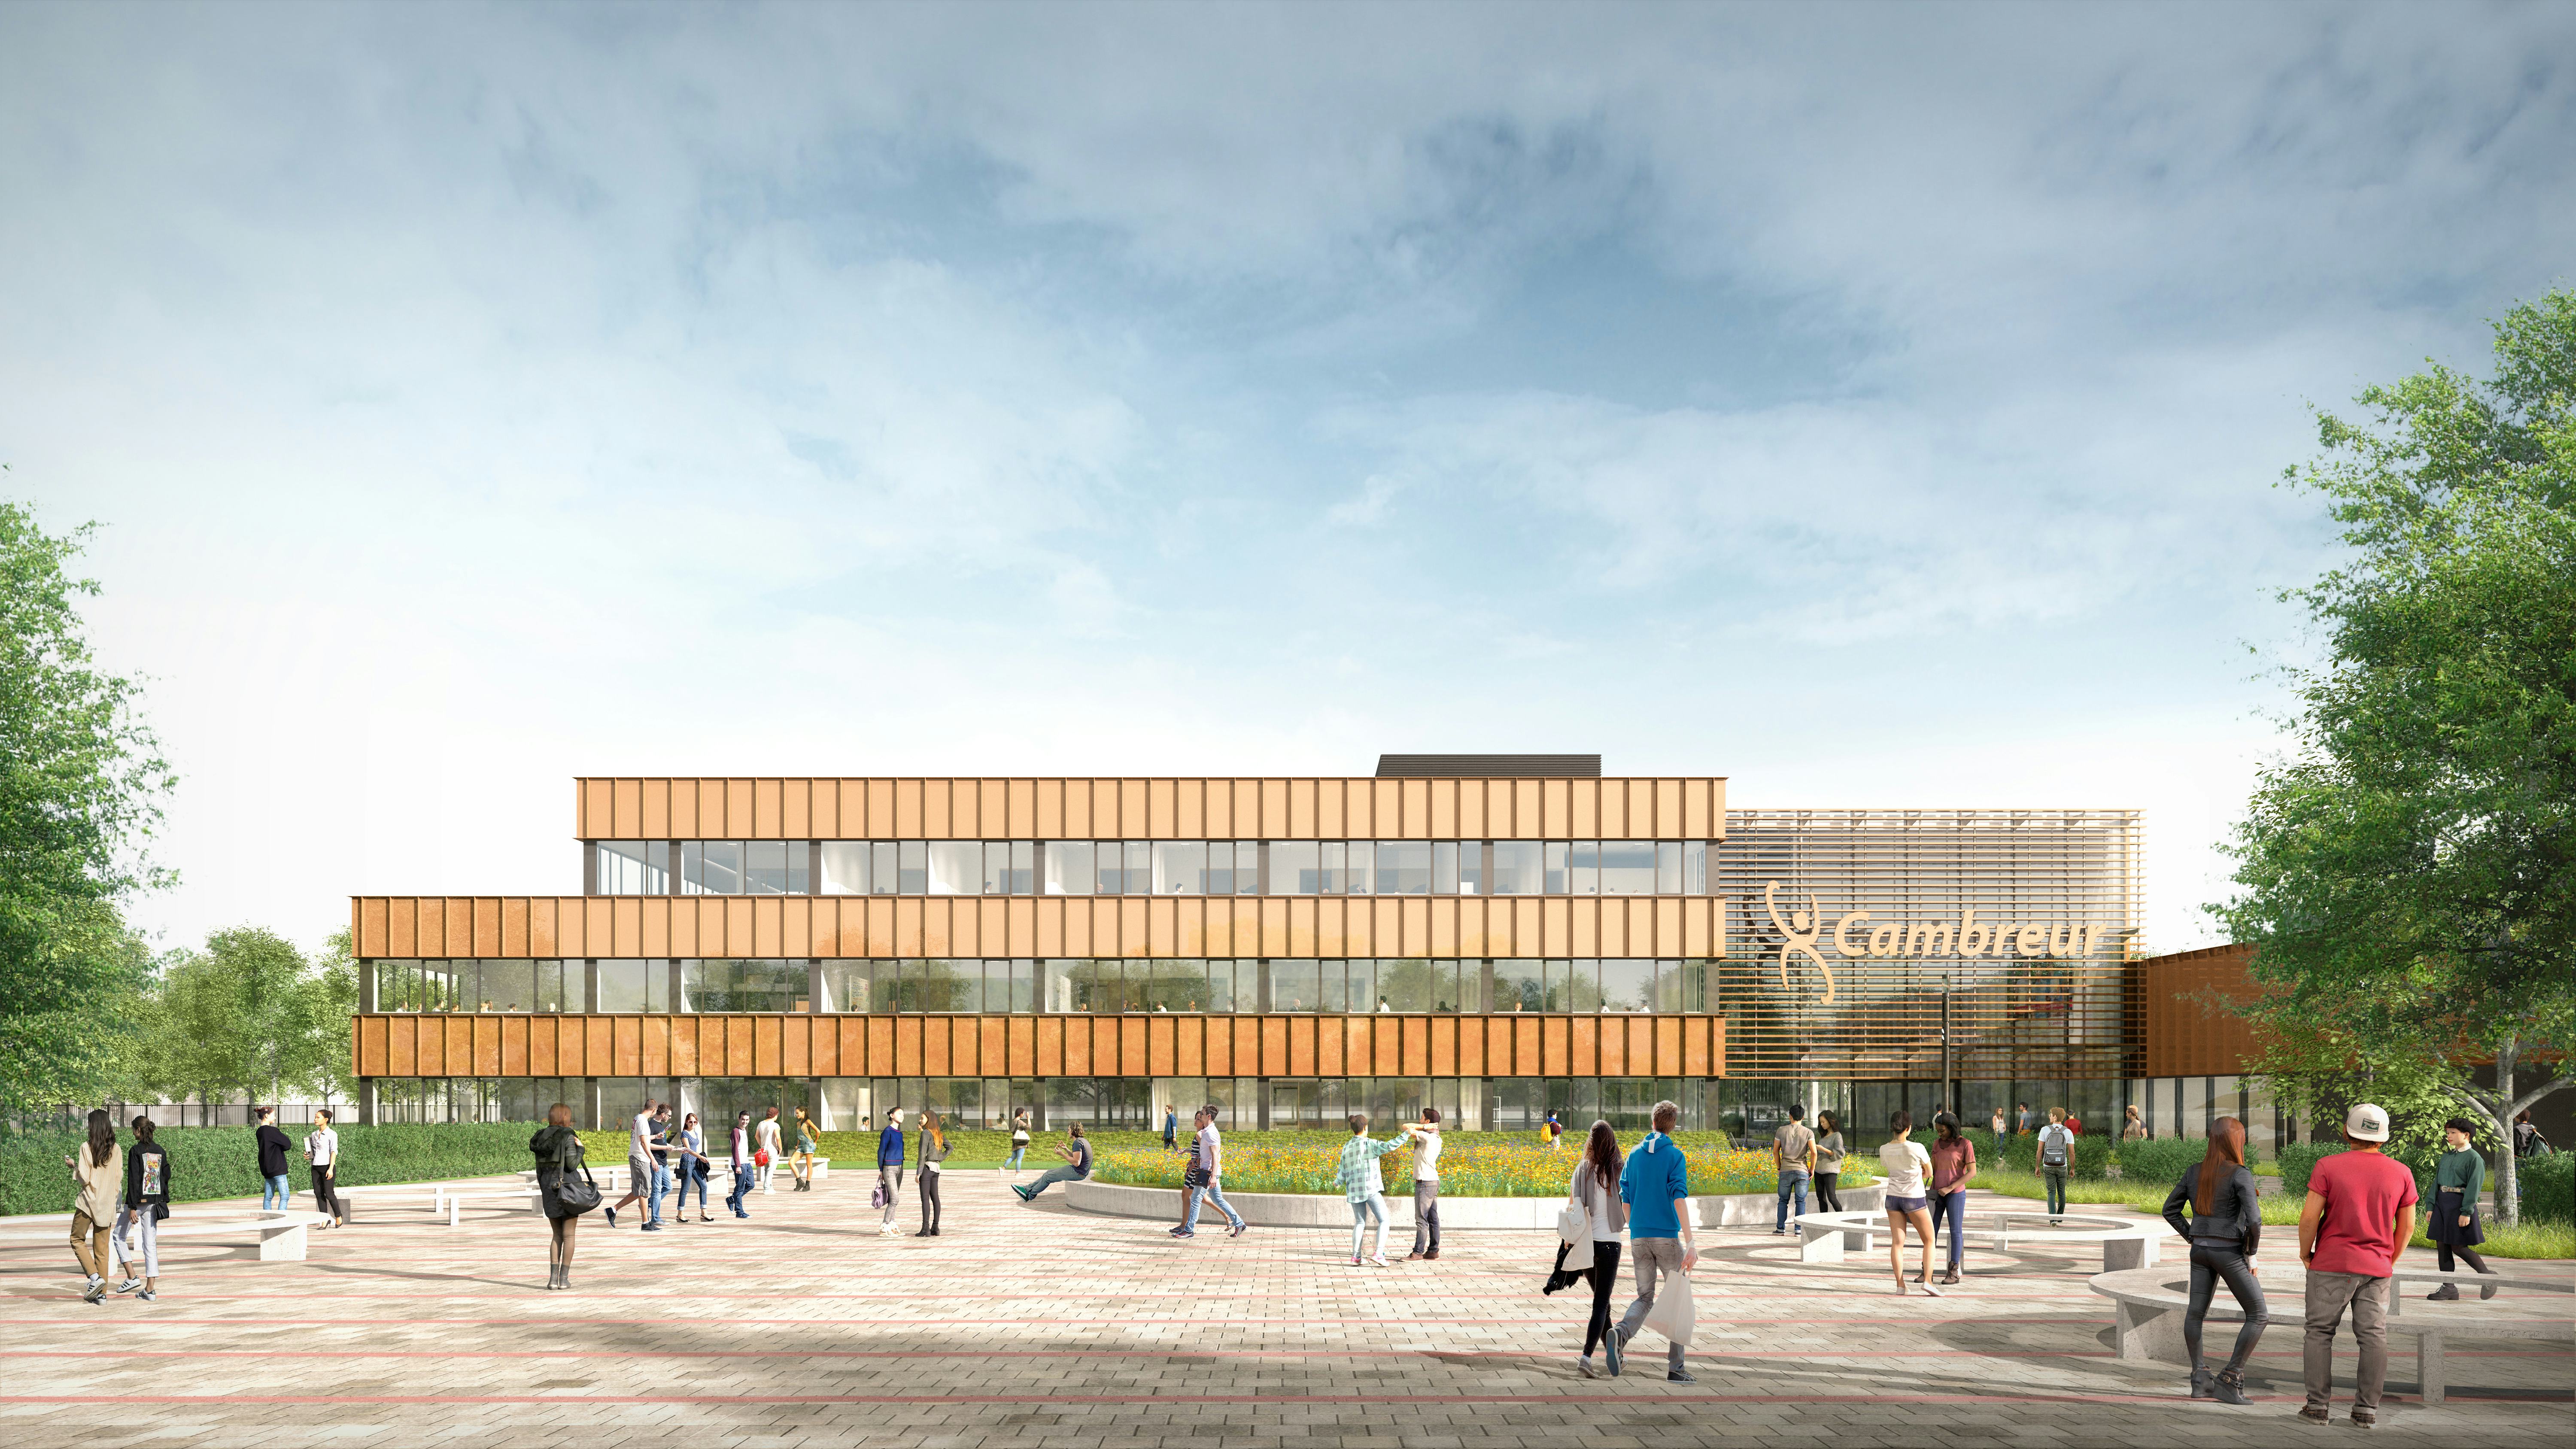 cepezed ontwerpt nieuwbouw Cambreur College Dongen